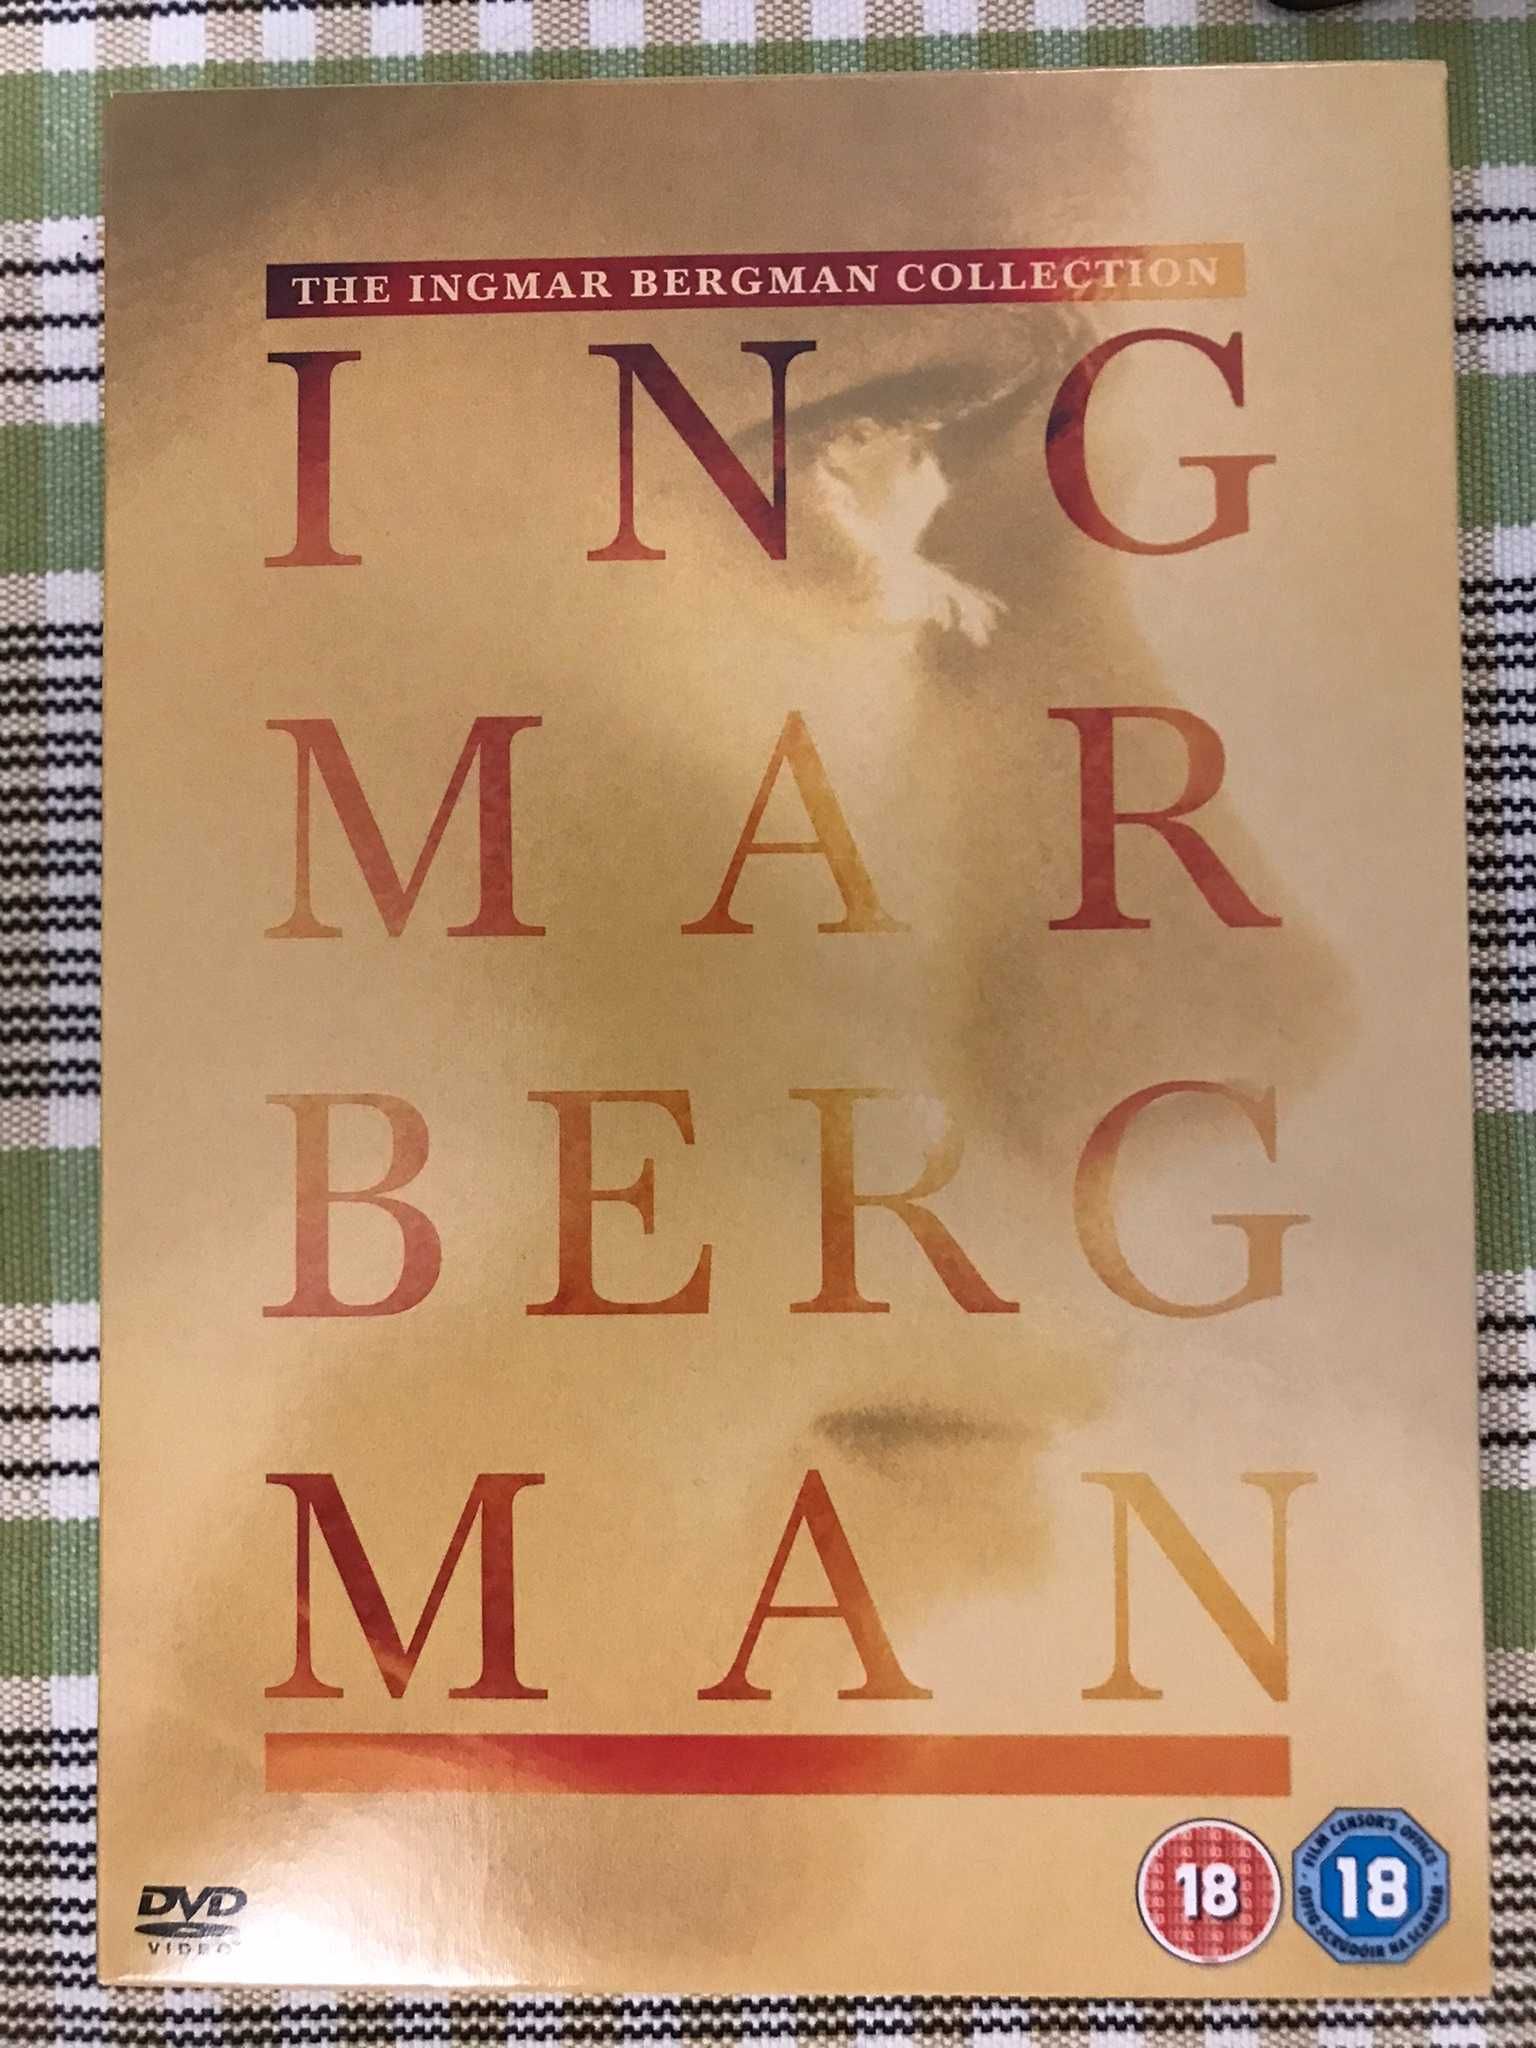 The Ingmar Bergman Collection